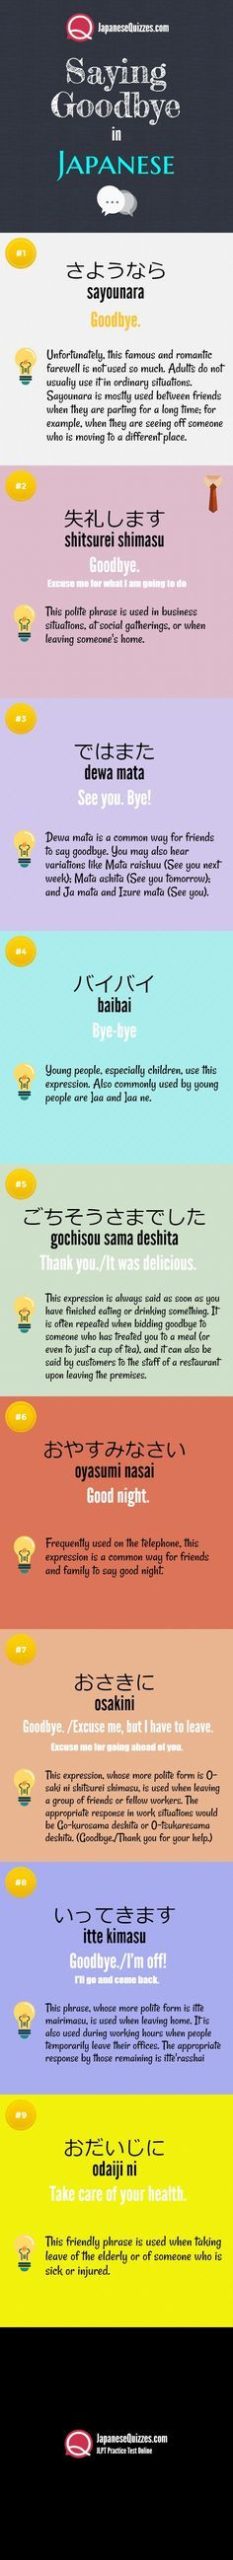 일본어를 귀찮게하는 10 가지 방법